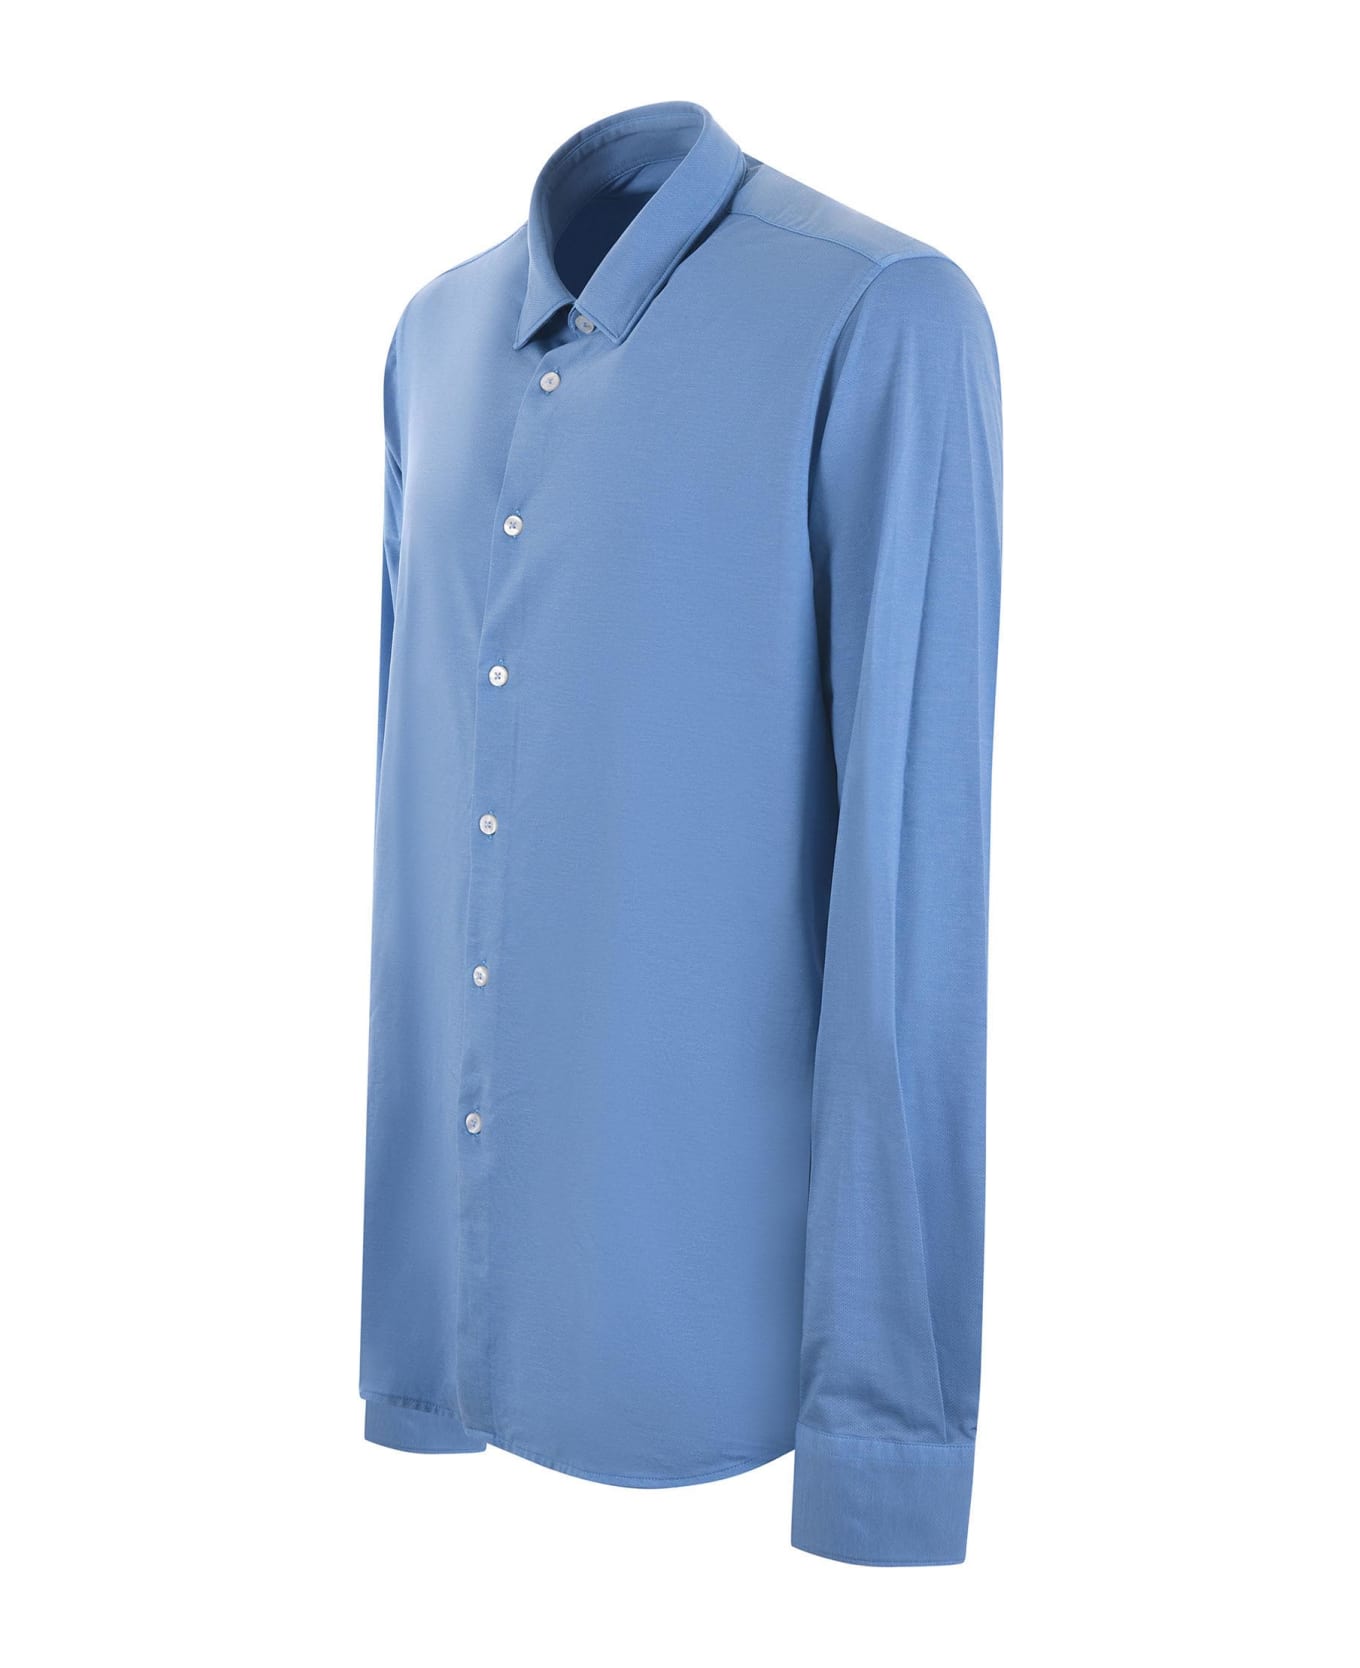 RRD - Roberto Ricci Design Rrd Shirt - Azzurro